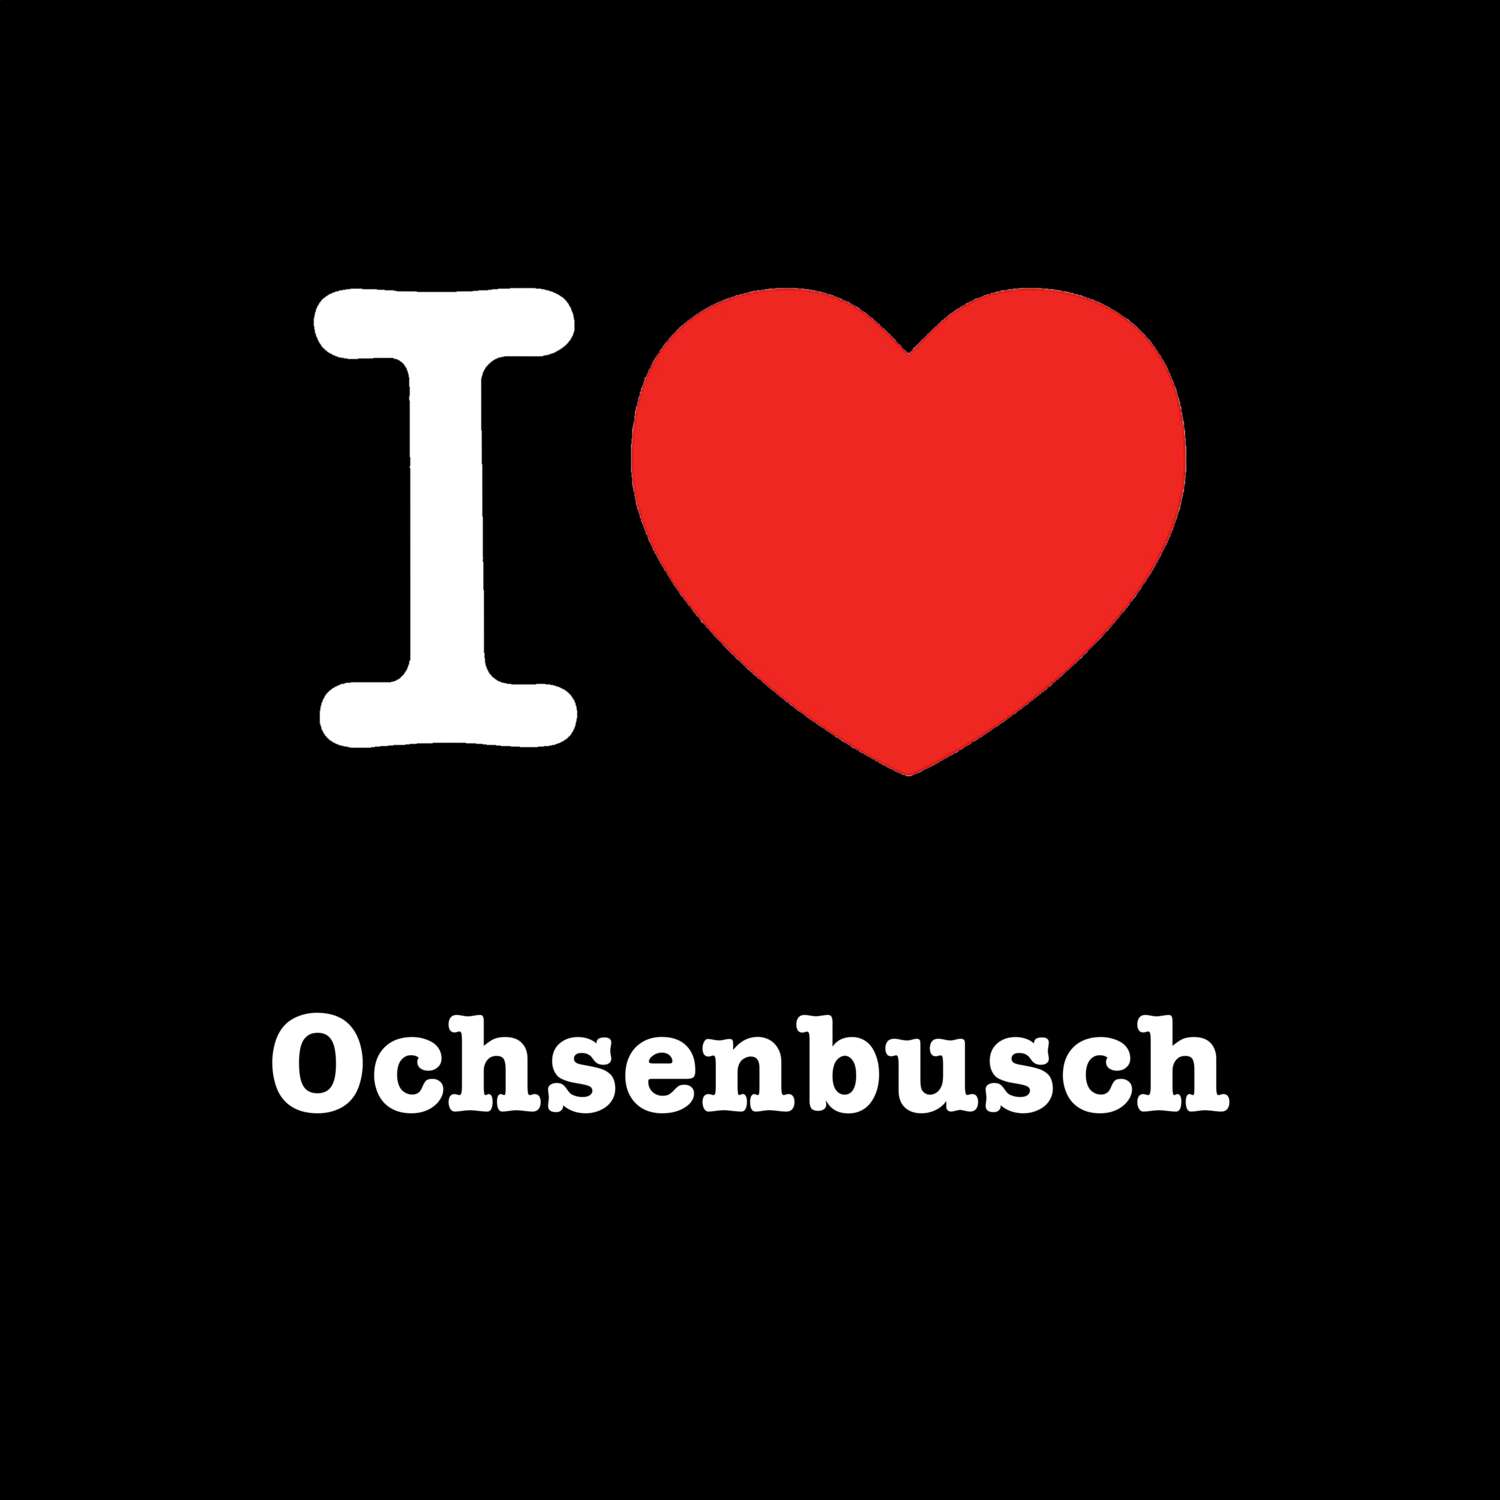 Ochsenbusch T-Shirt »I love«